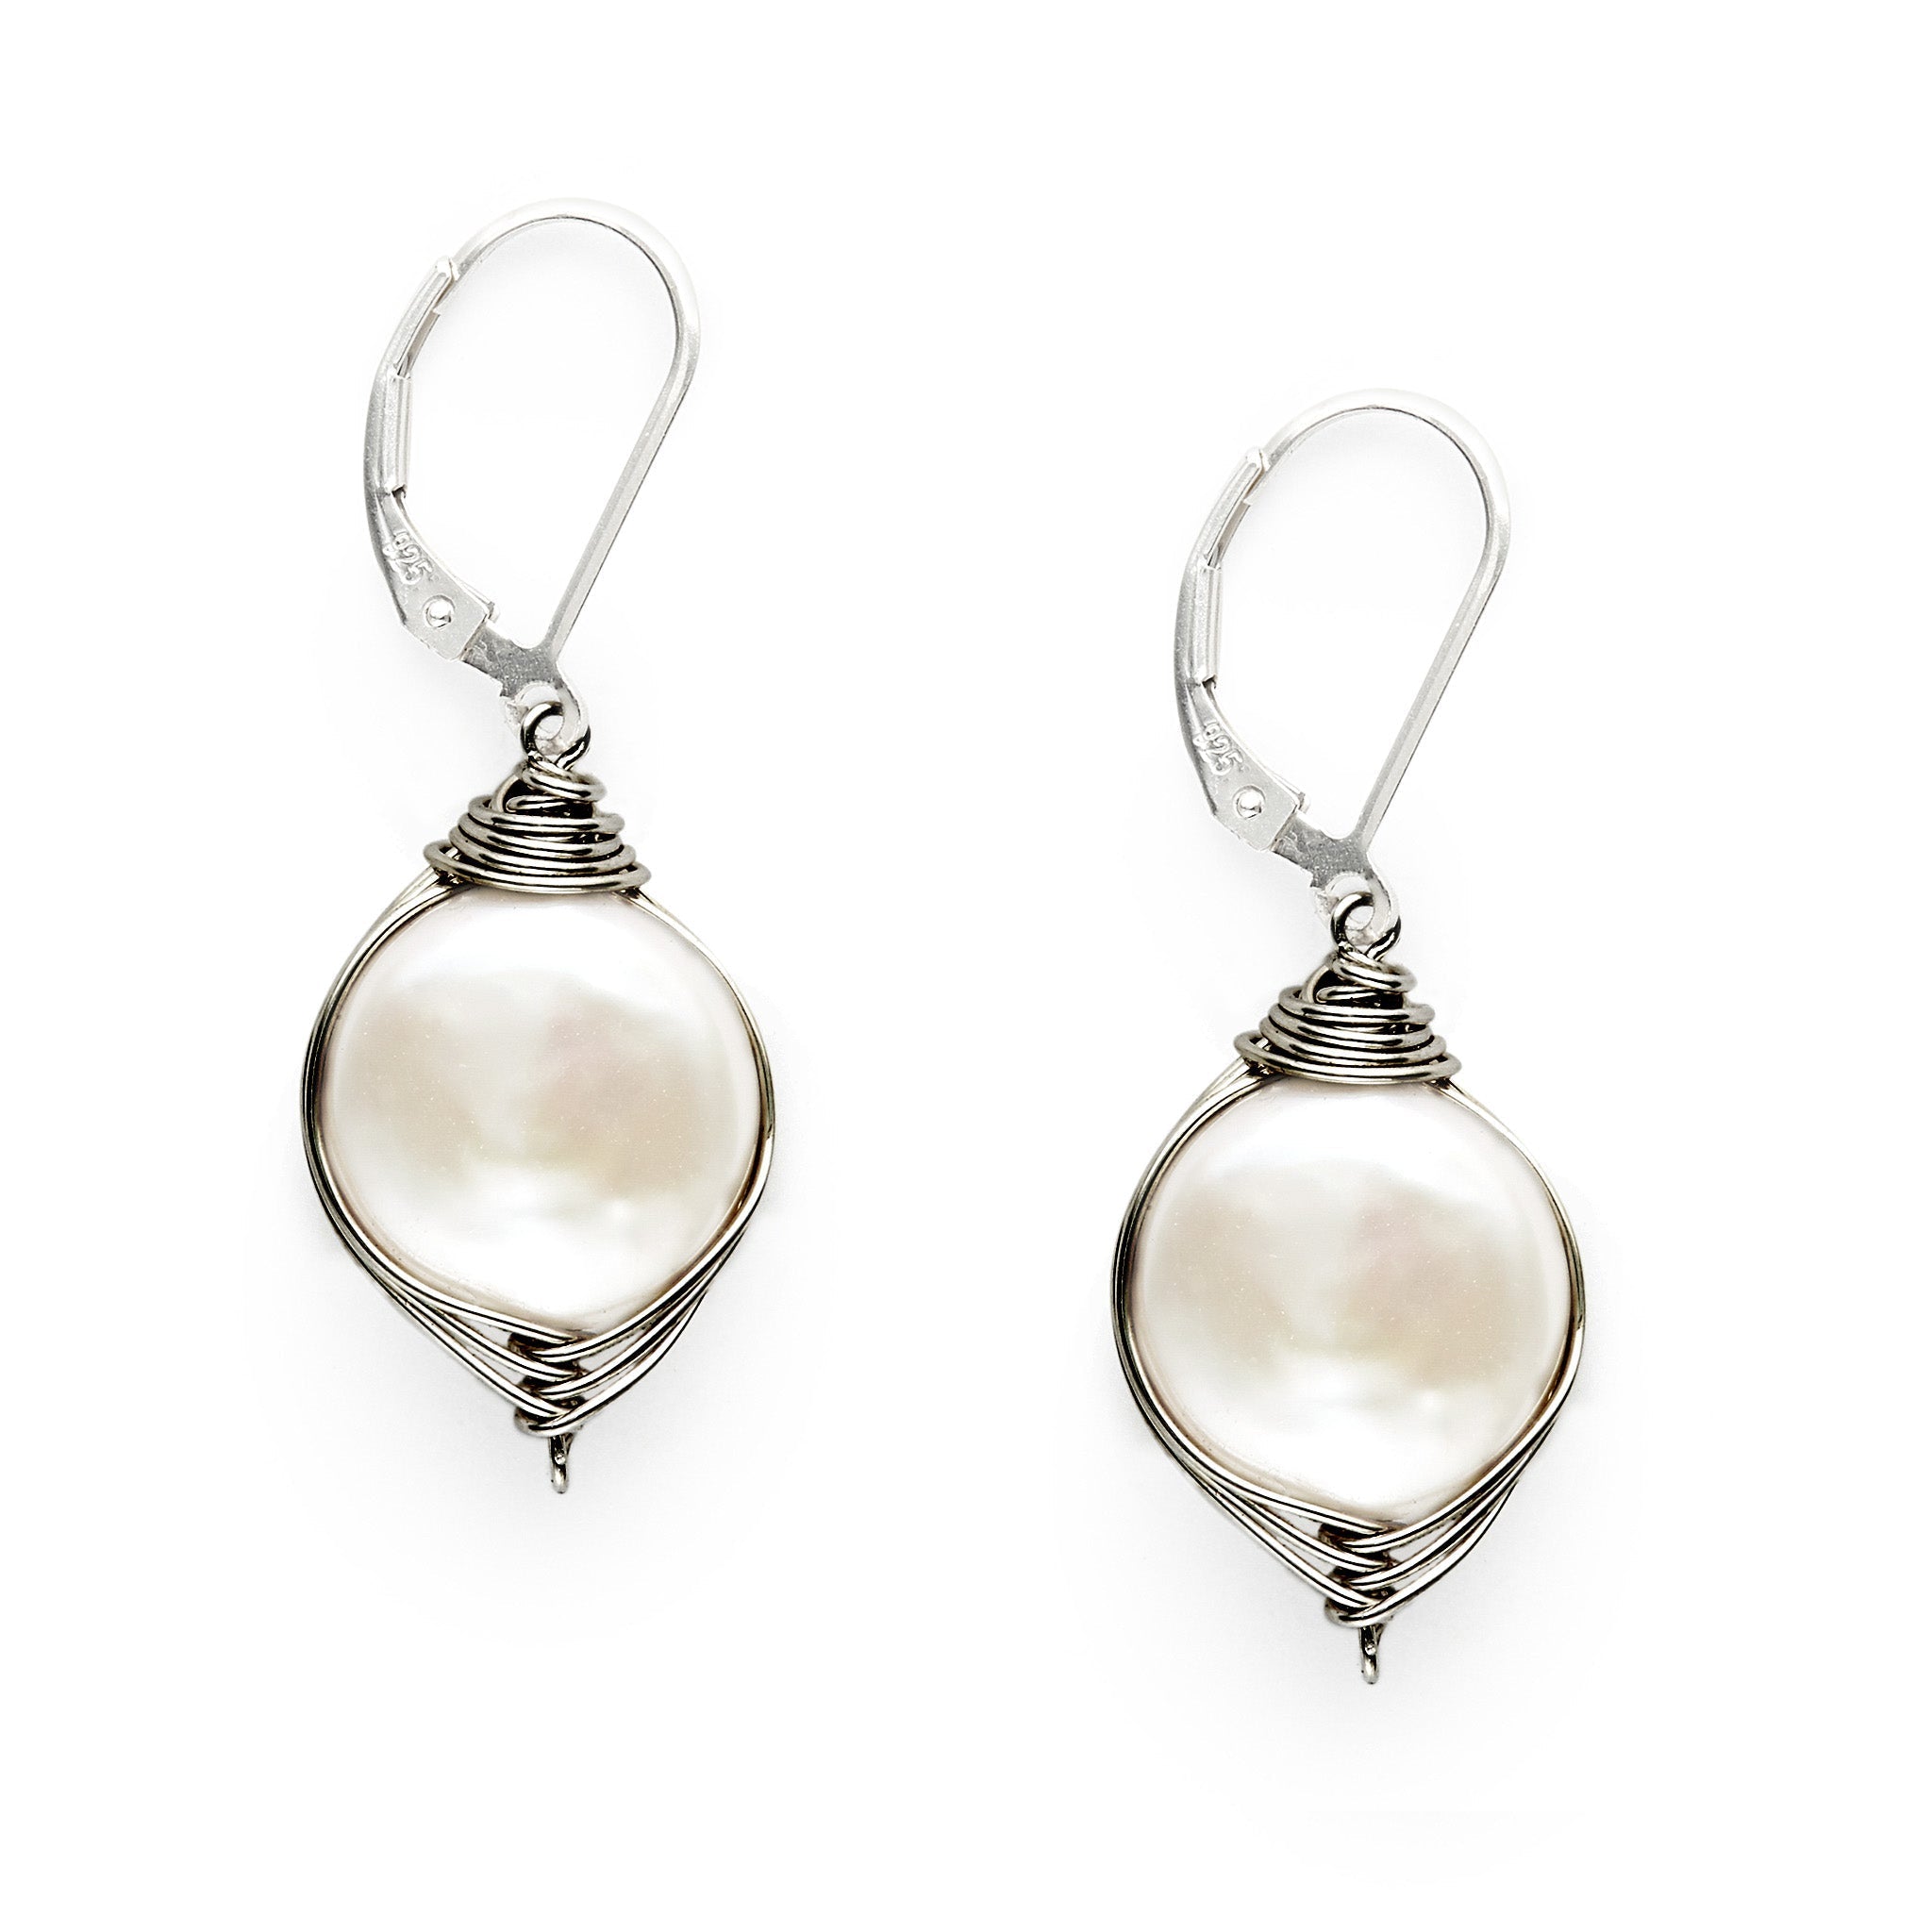 Oxidized Wrapped Pearl Earring - Earrings